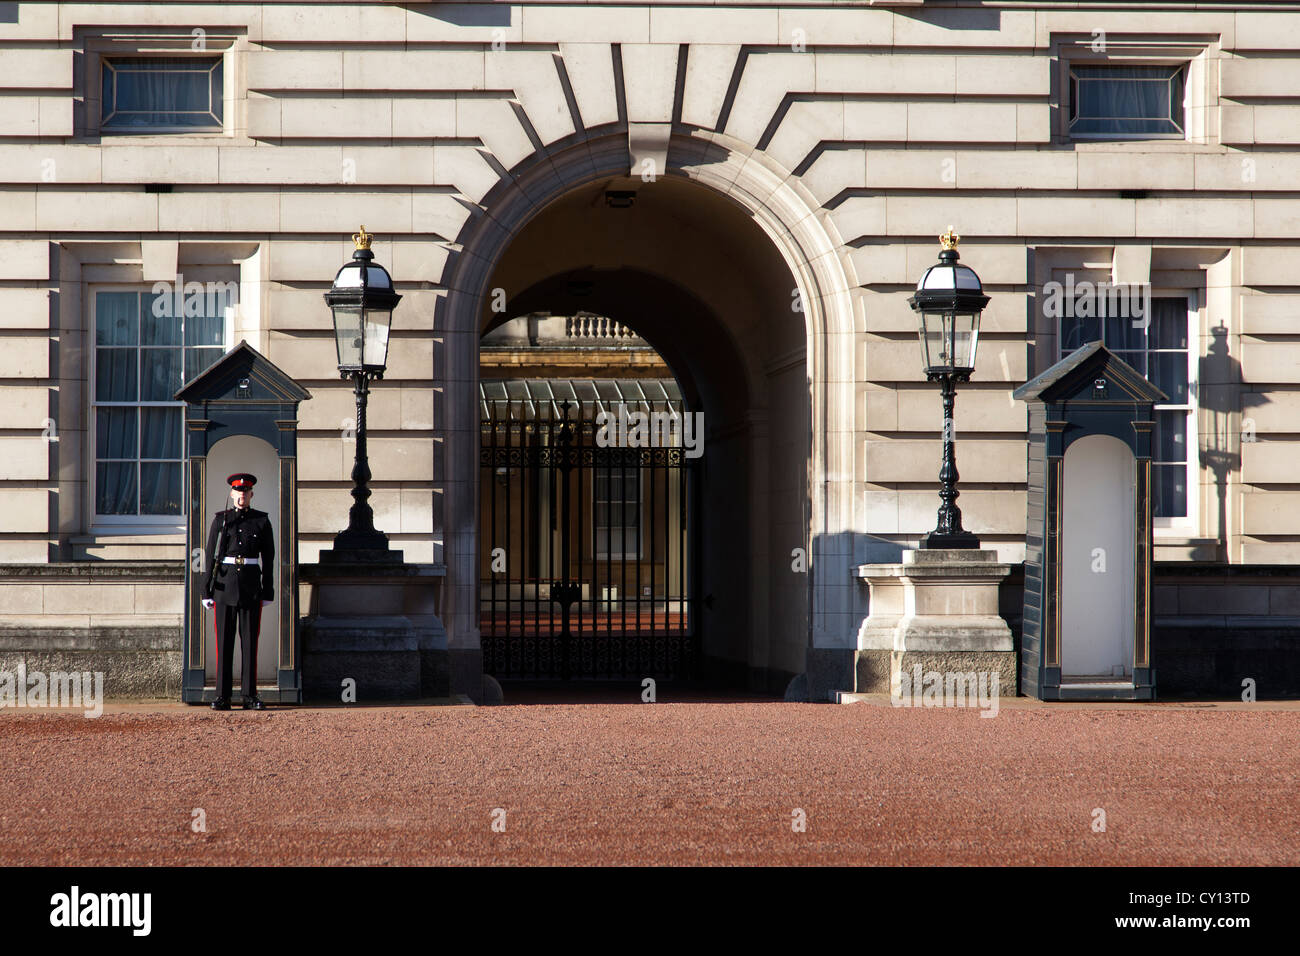 Garde côtière canadienne dans une guérite à l'extérieur de Buckingham Palace, The Mall, Londres, Angleterre, Royaume-Uni. Banque D'Images